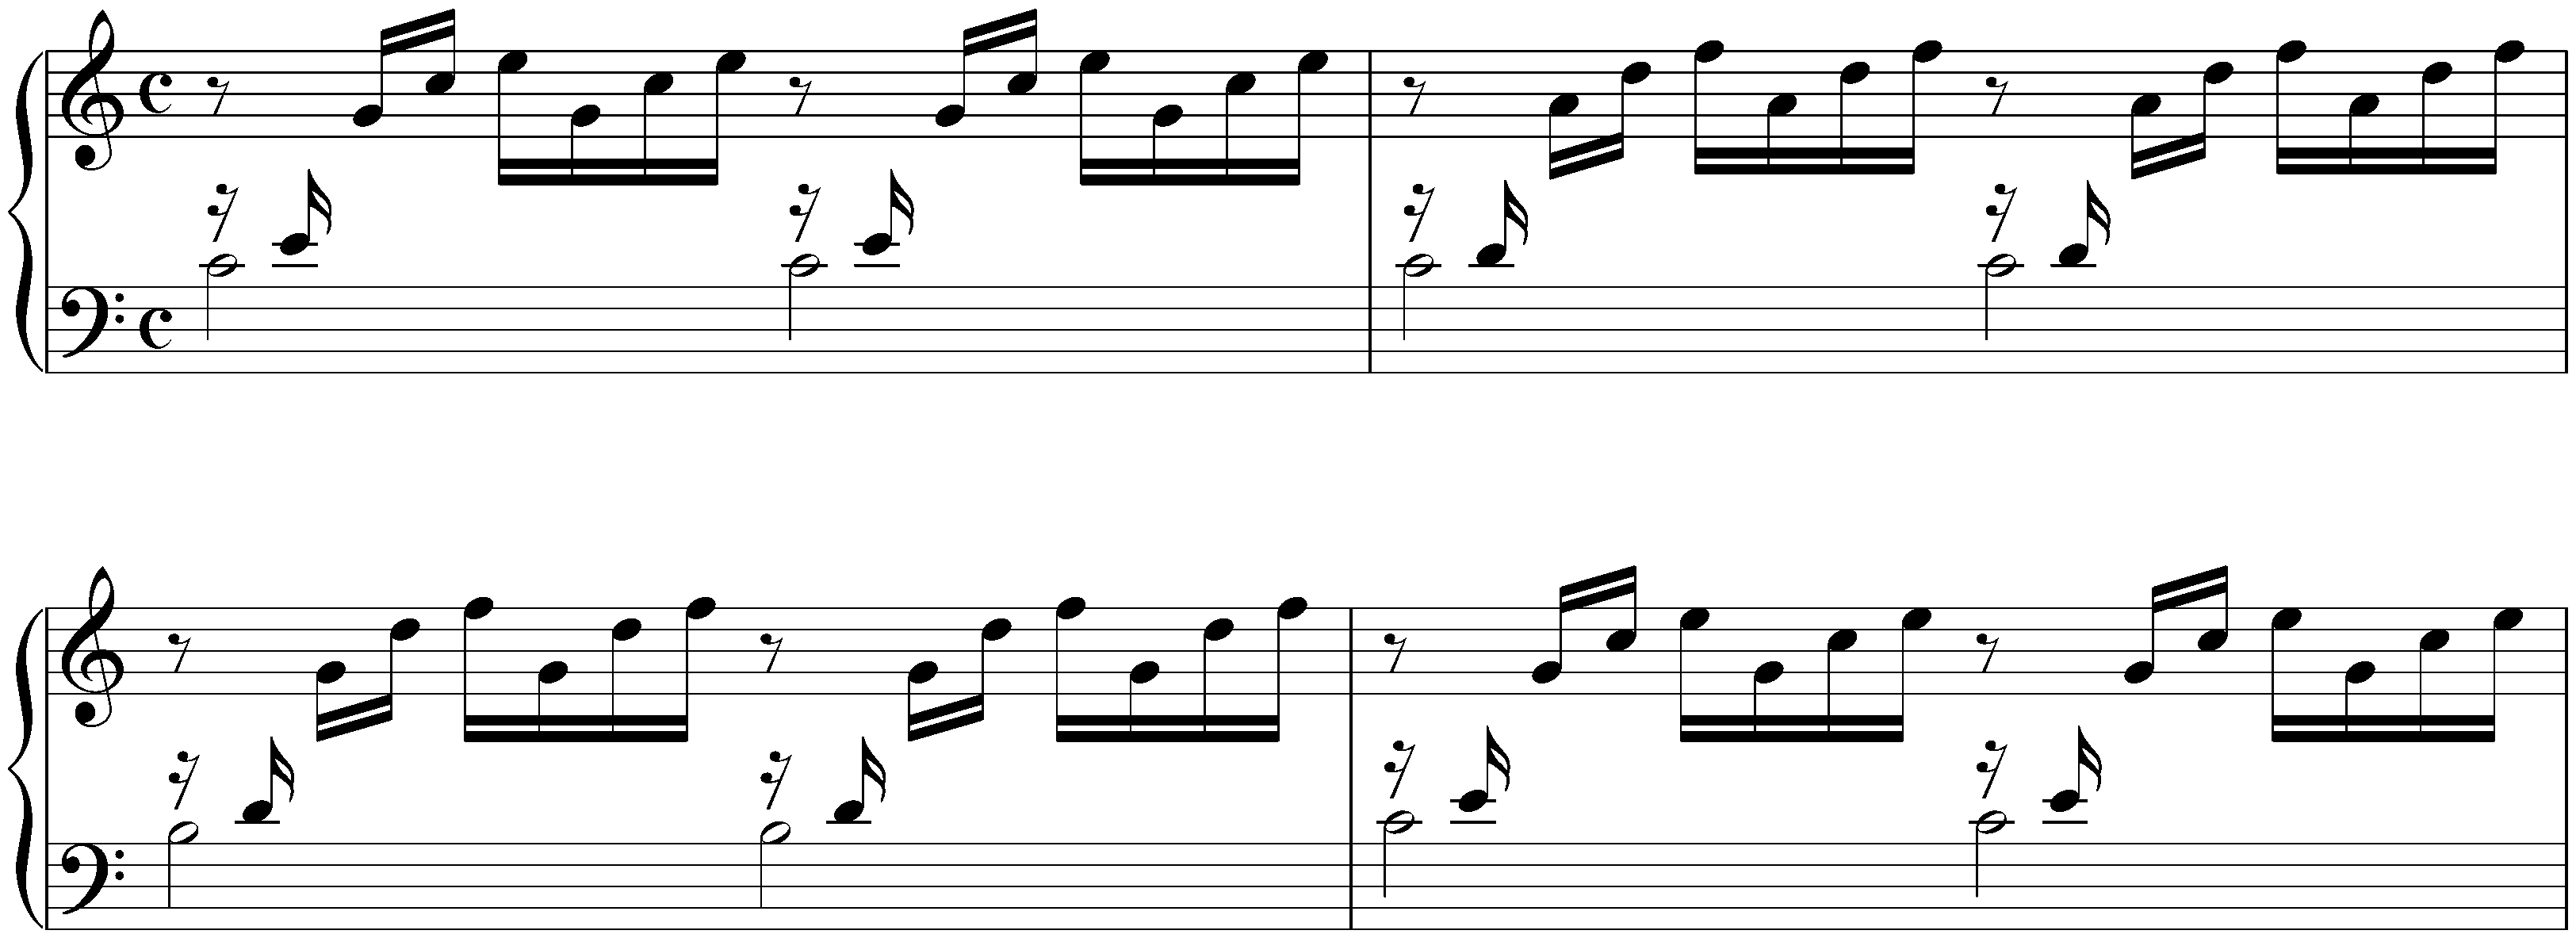 1. C major, BWV 846, Prelude (earlier version)